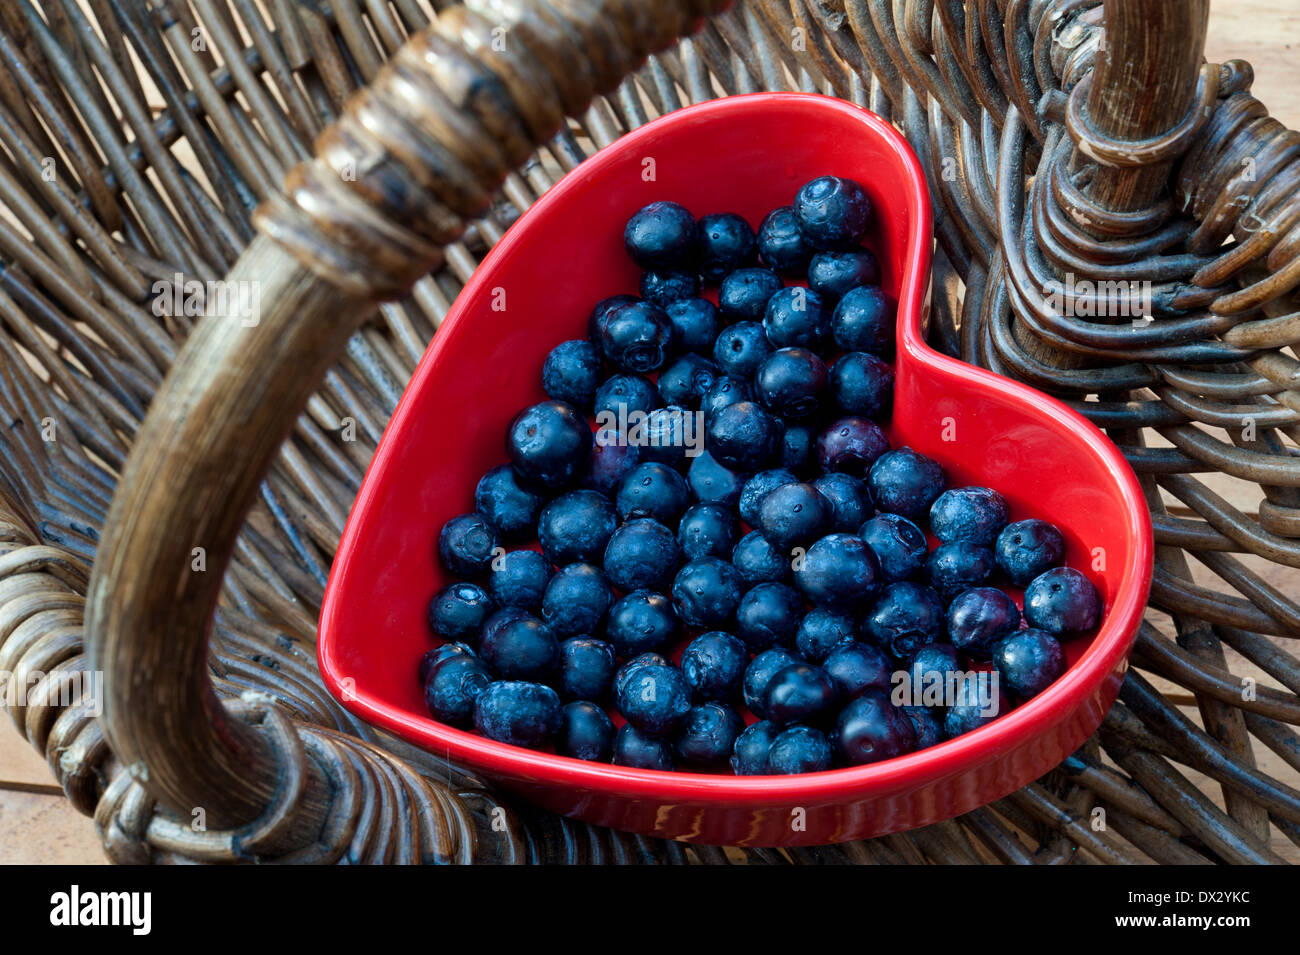 Heidelbeeren HERZGESUNDHEIT WARENKORB Gesundes essen Konzept/Blaubeeren in einem roten herzförmigen Gericht, das in einem traditionellen Weidenkorb Stockfoto